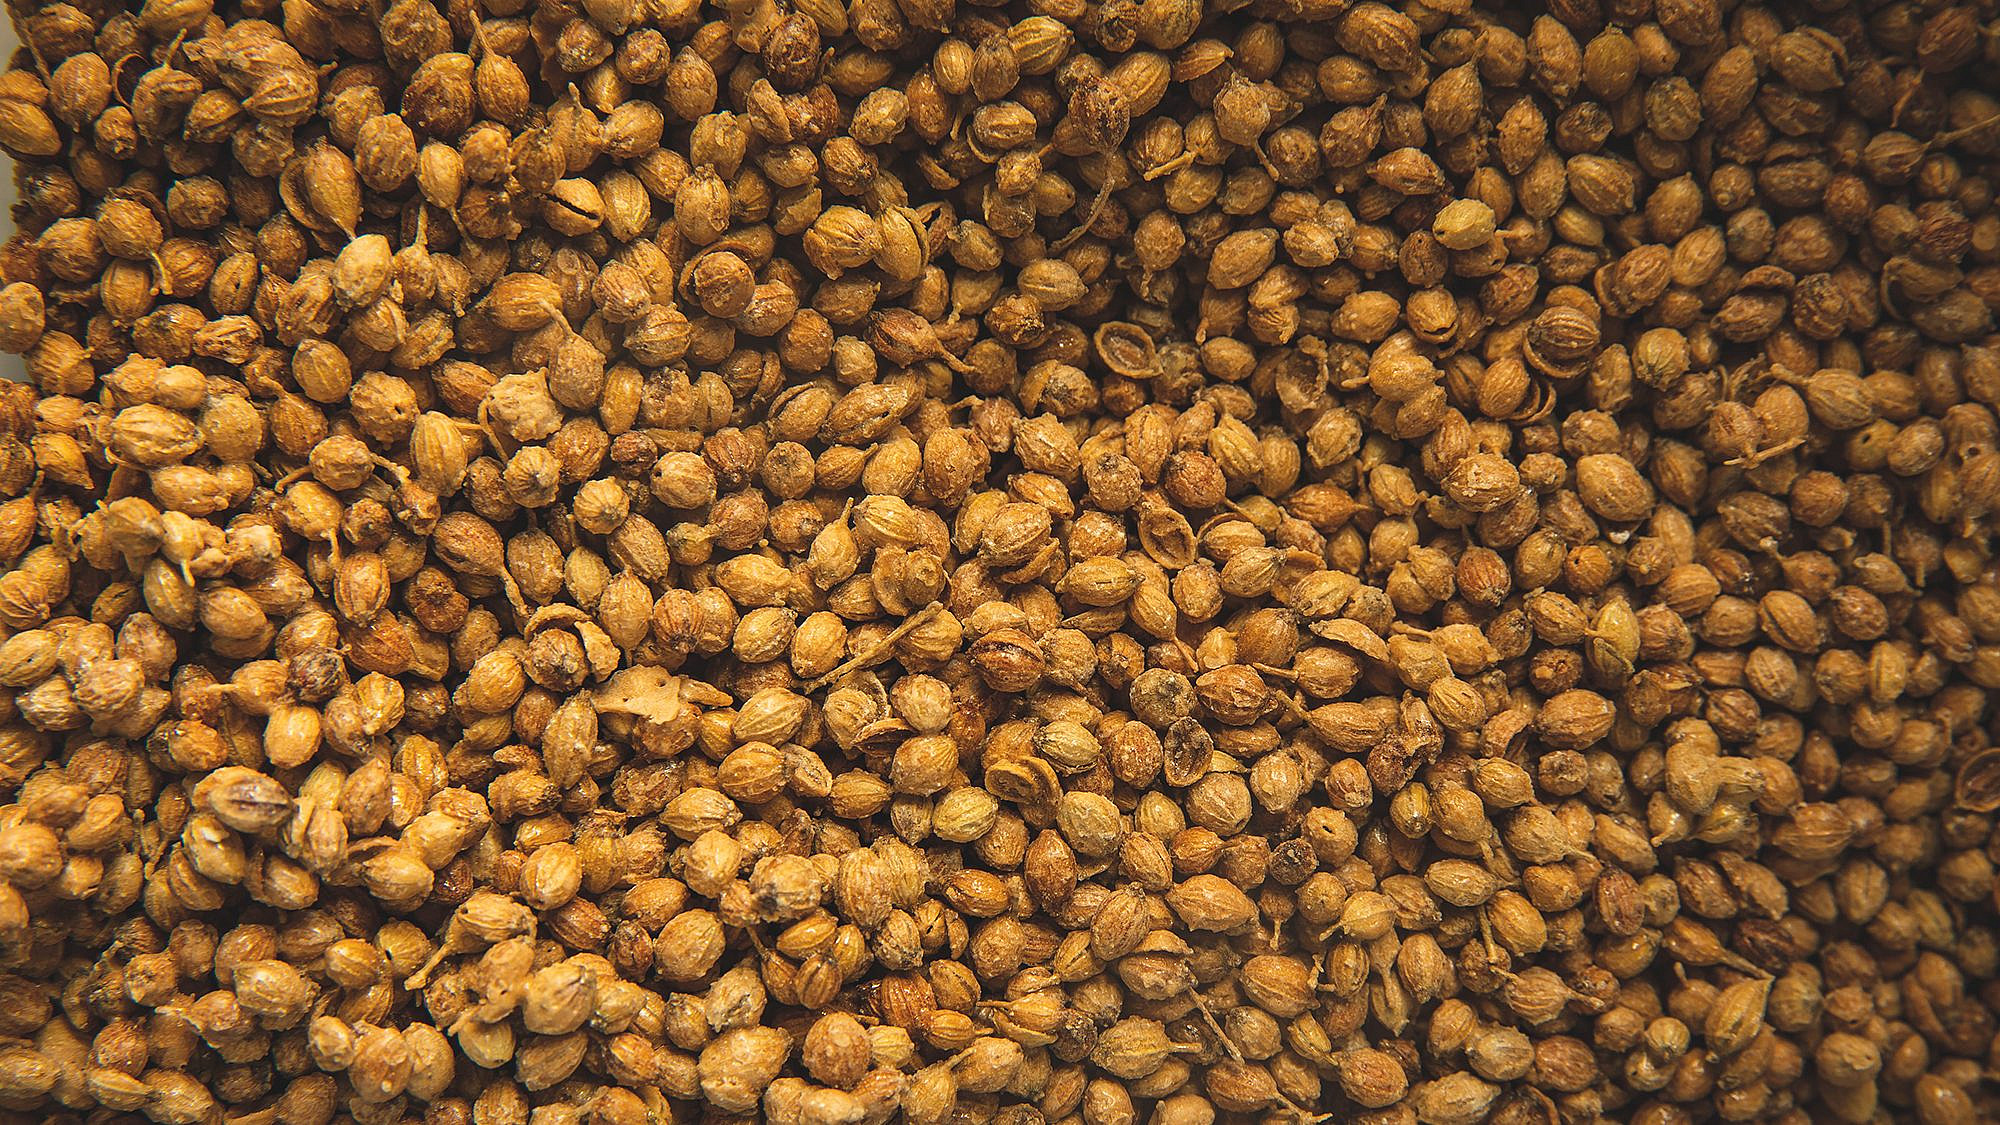 זרעי כוסברה מסוכרים של מאי ישורון. צילום: שני בריל; סטיילינג: עינב רייכנר